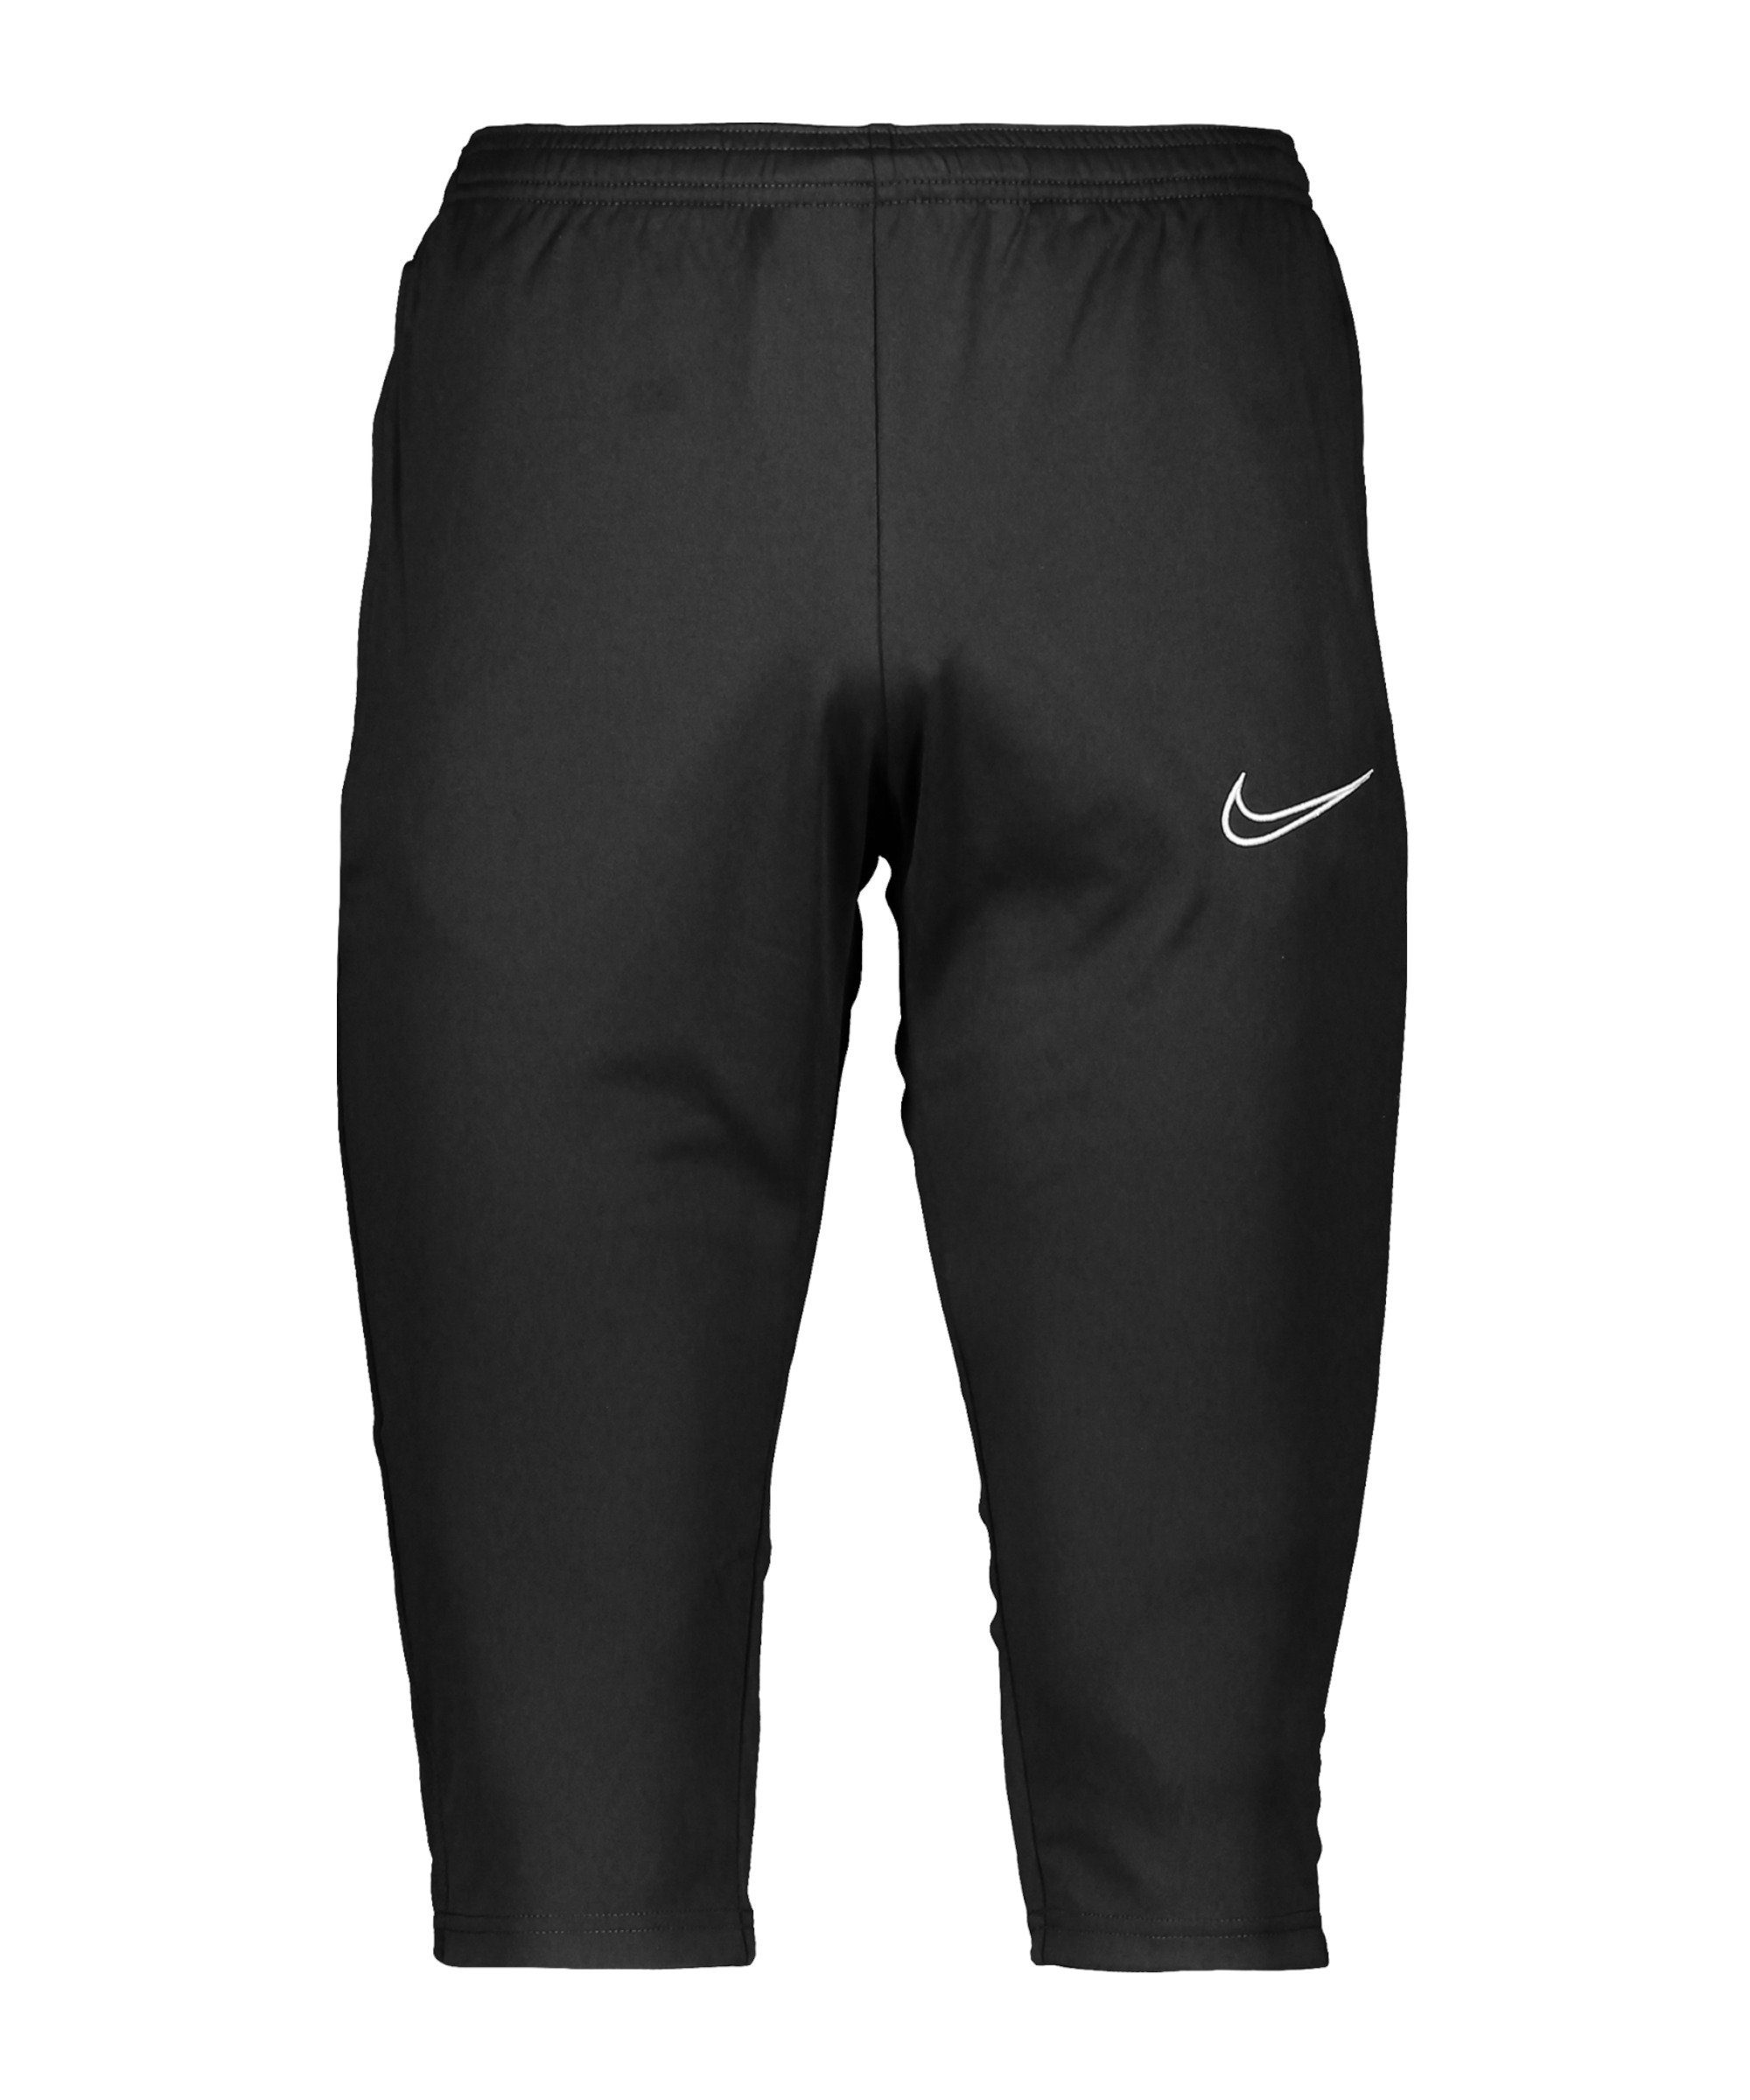 Kurze Nike Torwarthosen für Herren online kaufen | OTTO